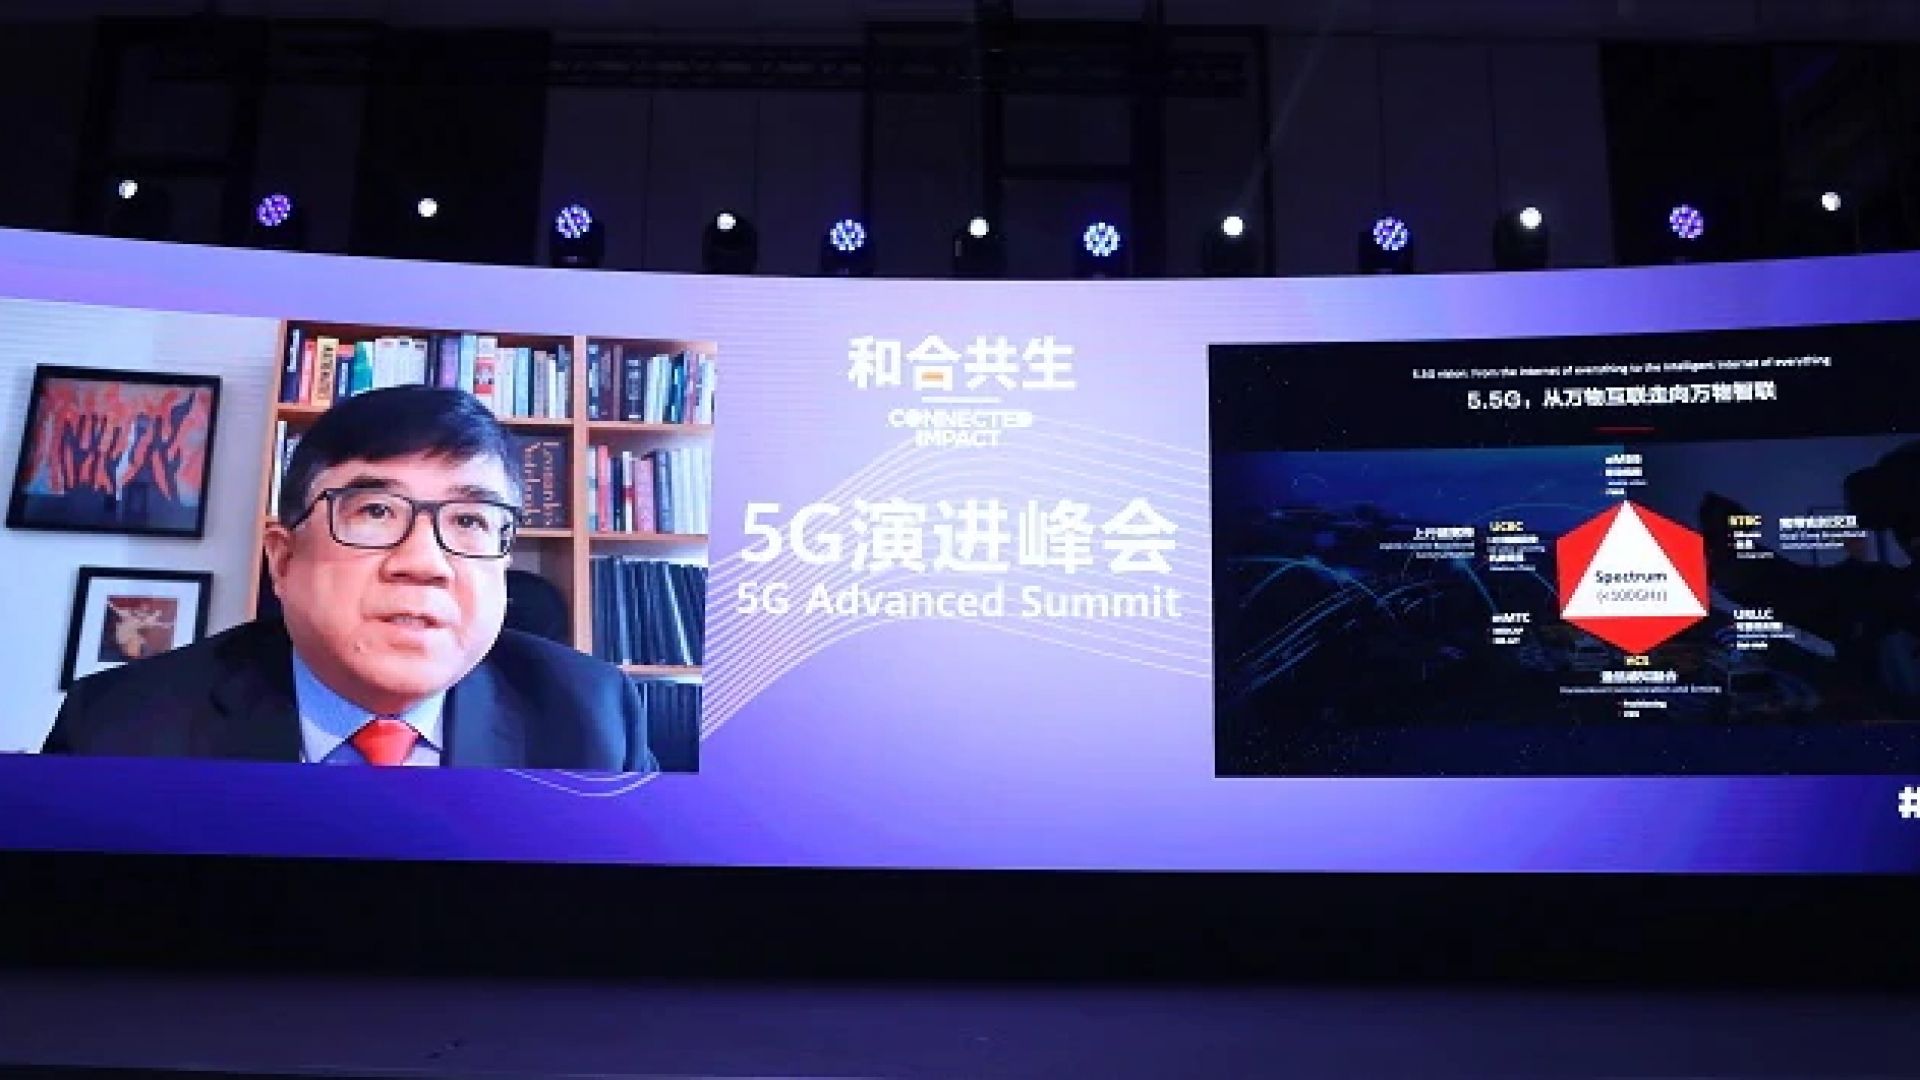  д-р Тонг Уен, сътрудник на Huawei и главен технически директор на Huawei Wireless